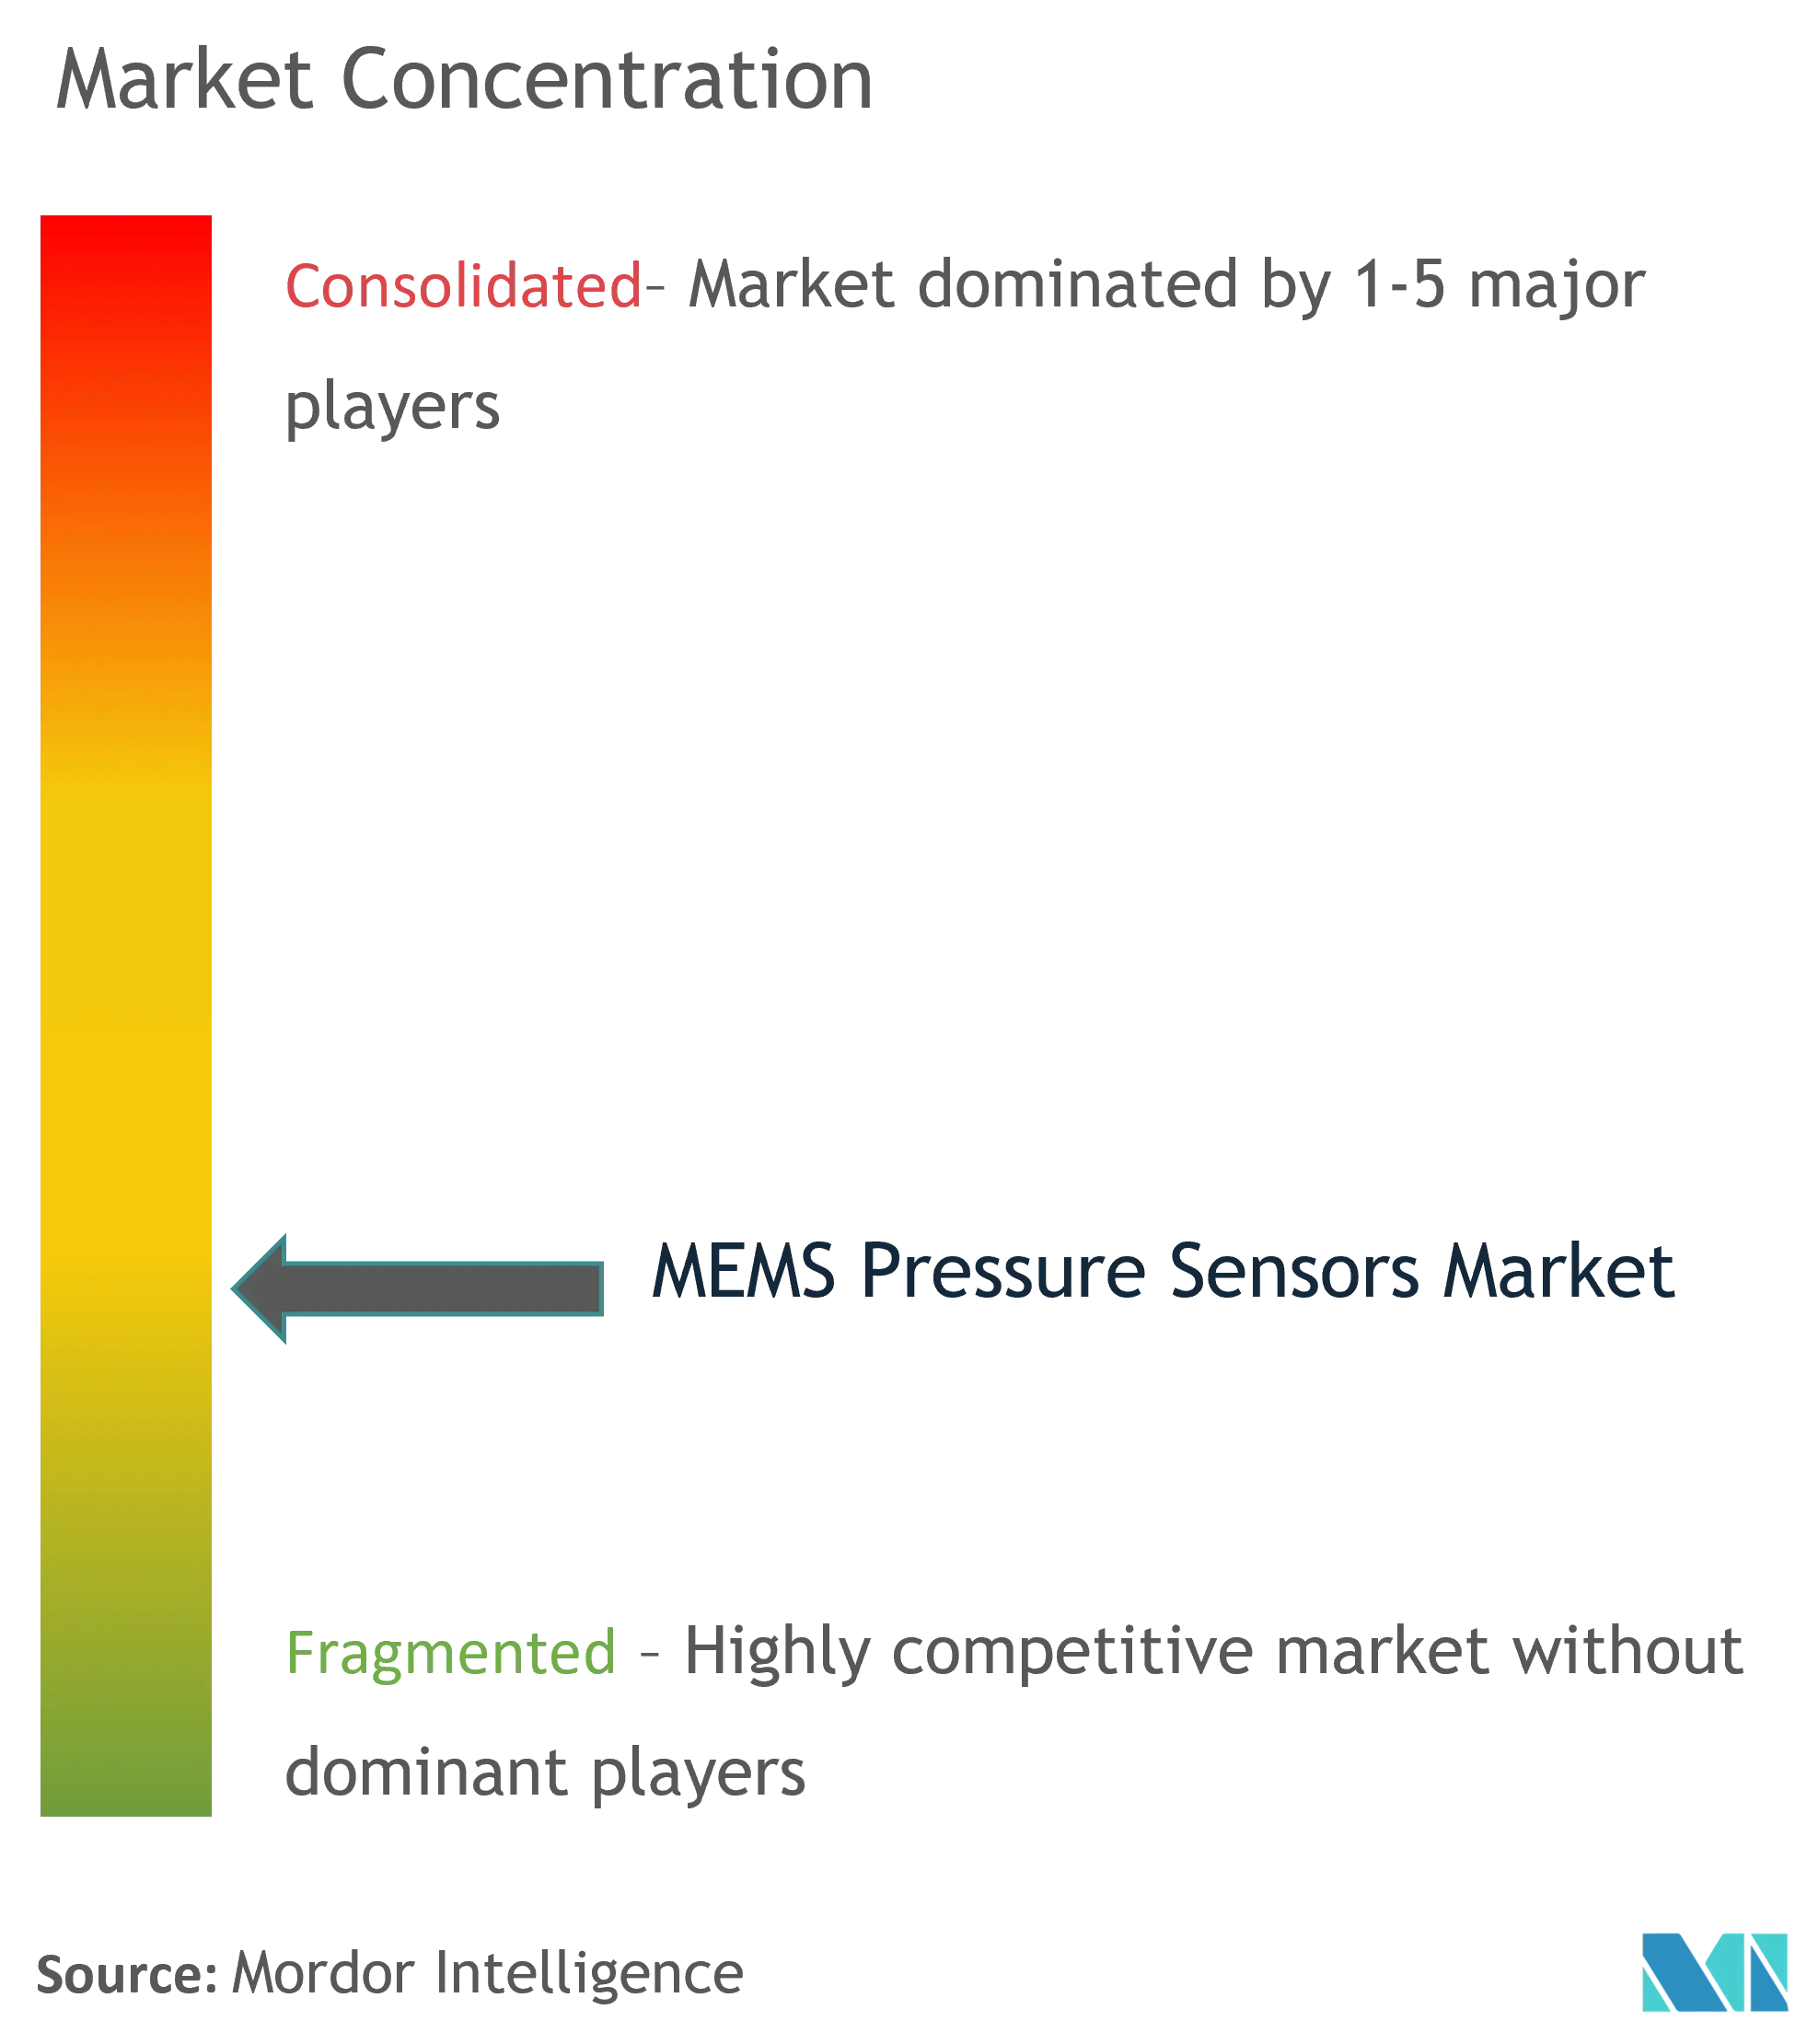 MEMS Pressure Sensors market - Market Concentration.png